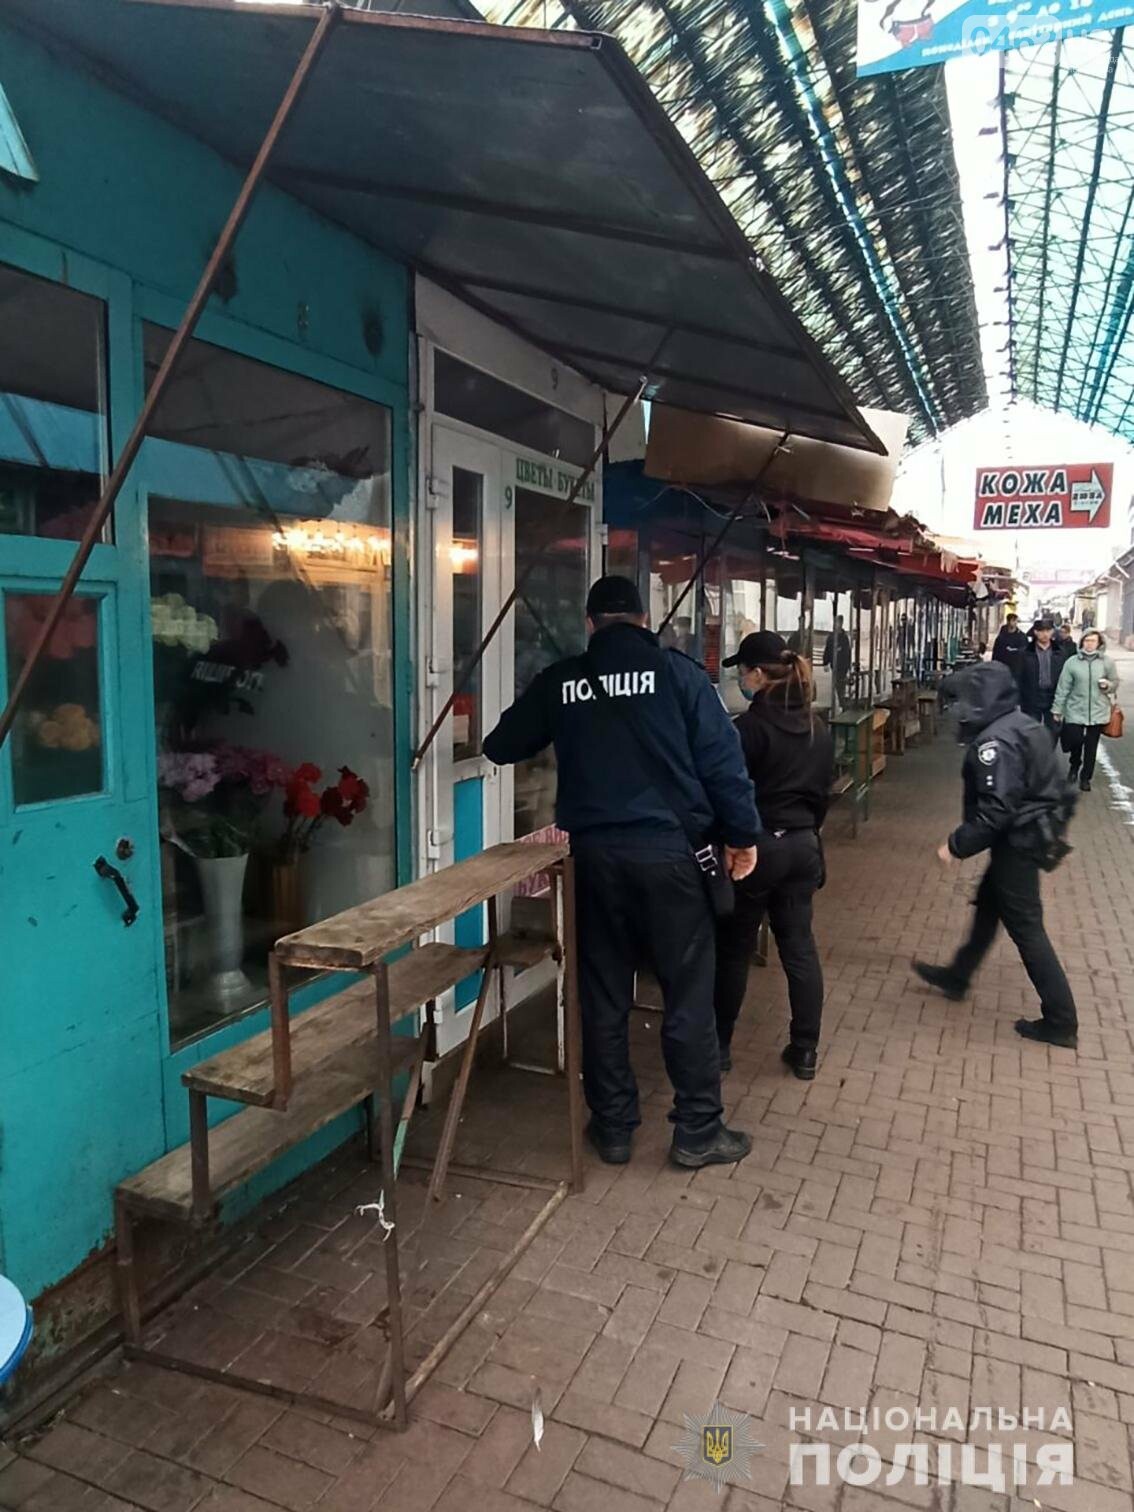 Карантинна поліція. Чернігівські правоохоронці посилили тиск на підприємців